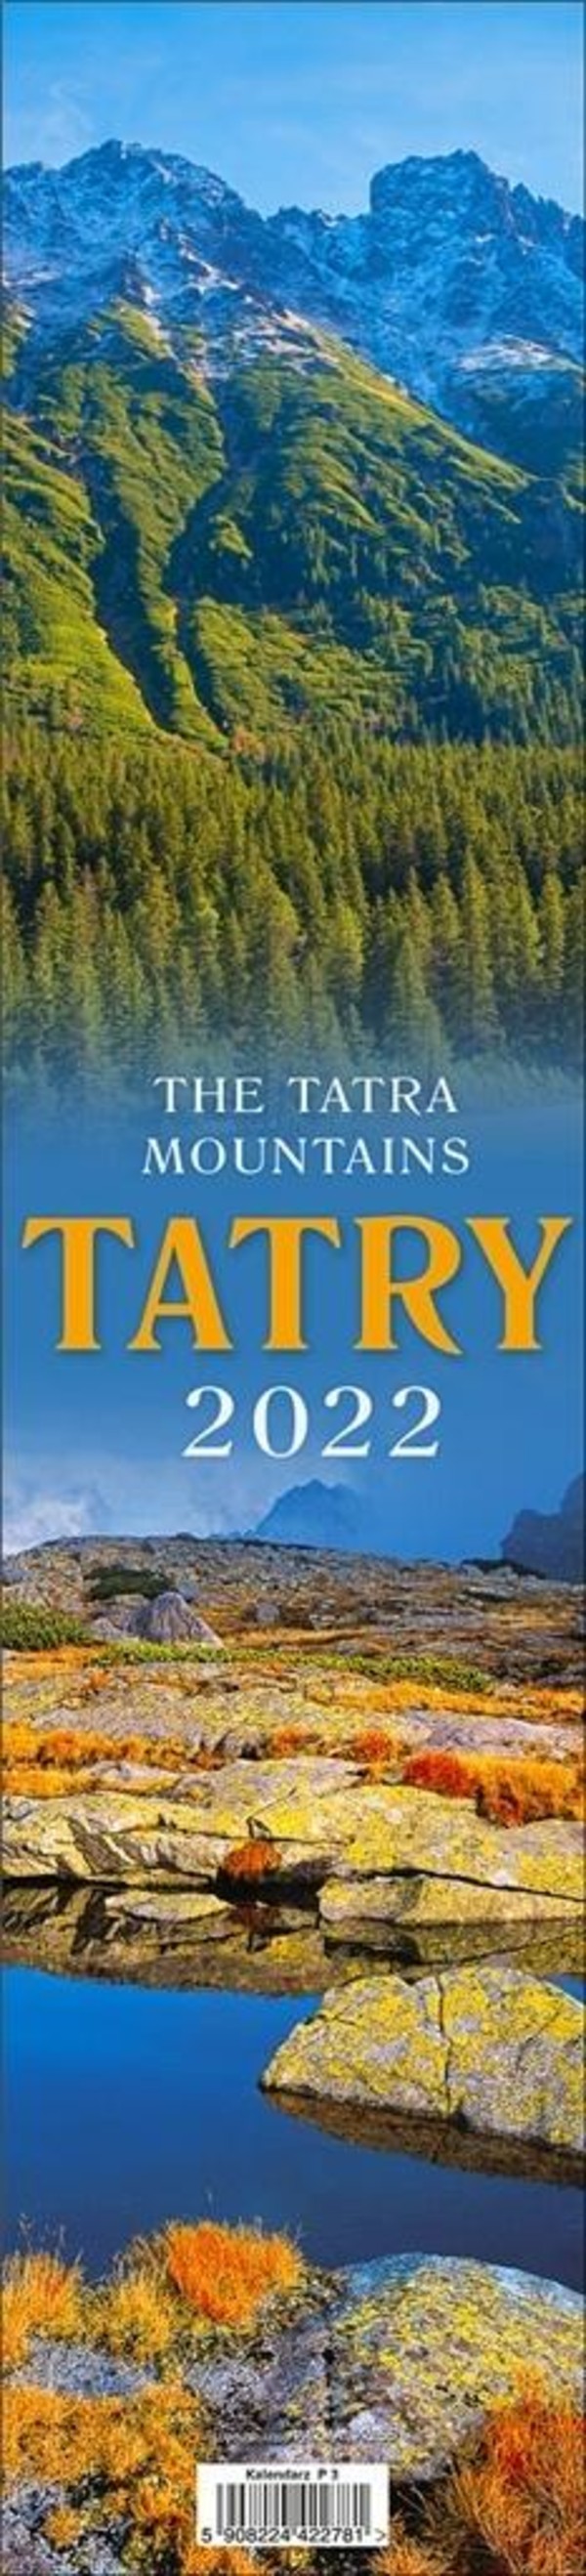 Kalendarz 2022 Paskowy Tatry